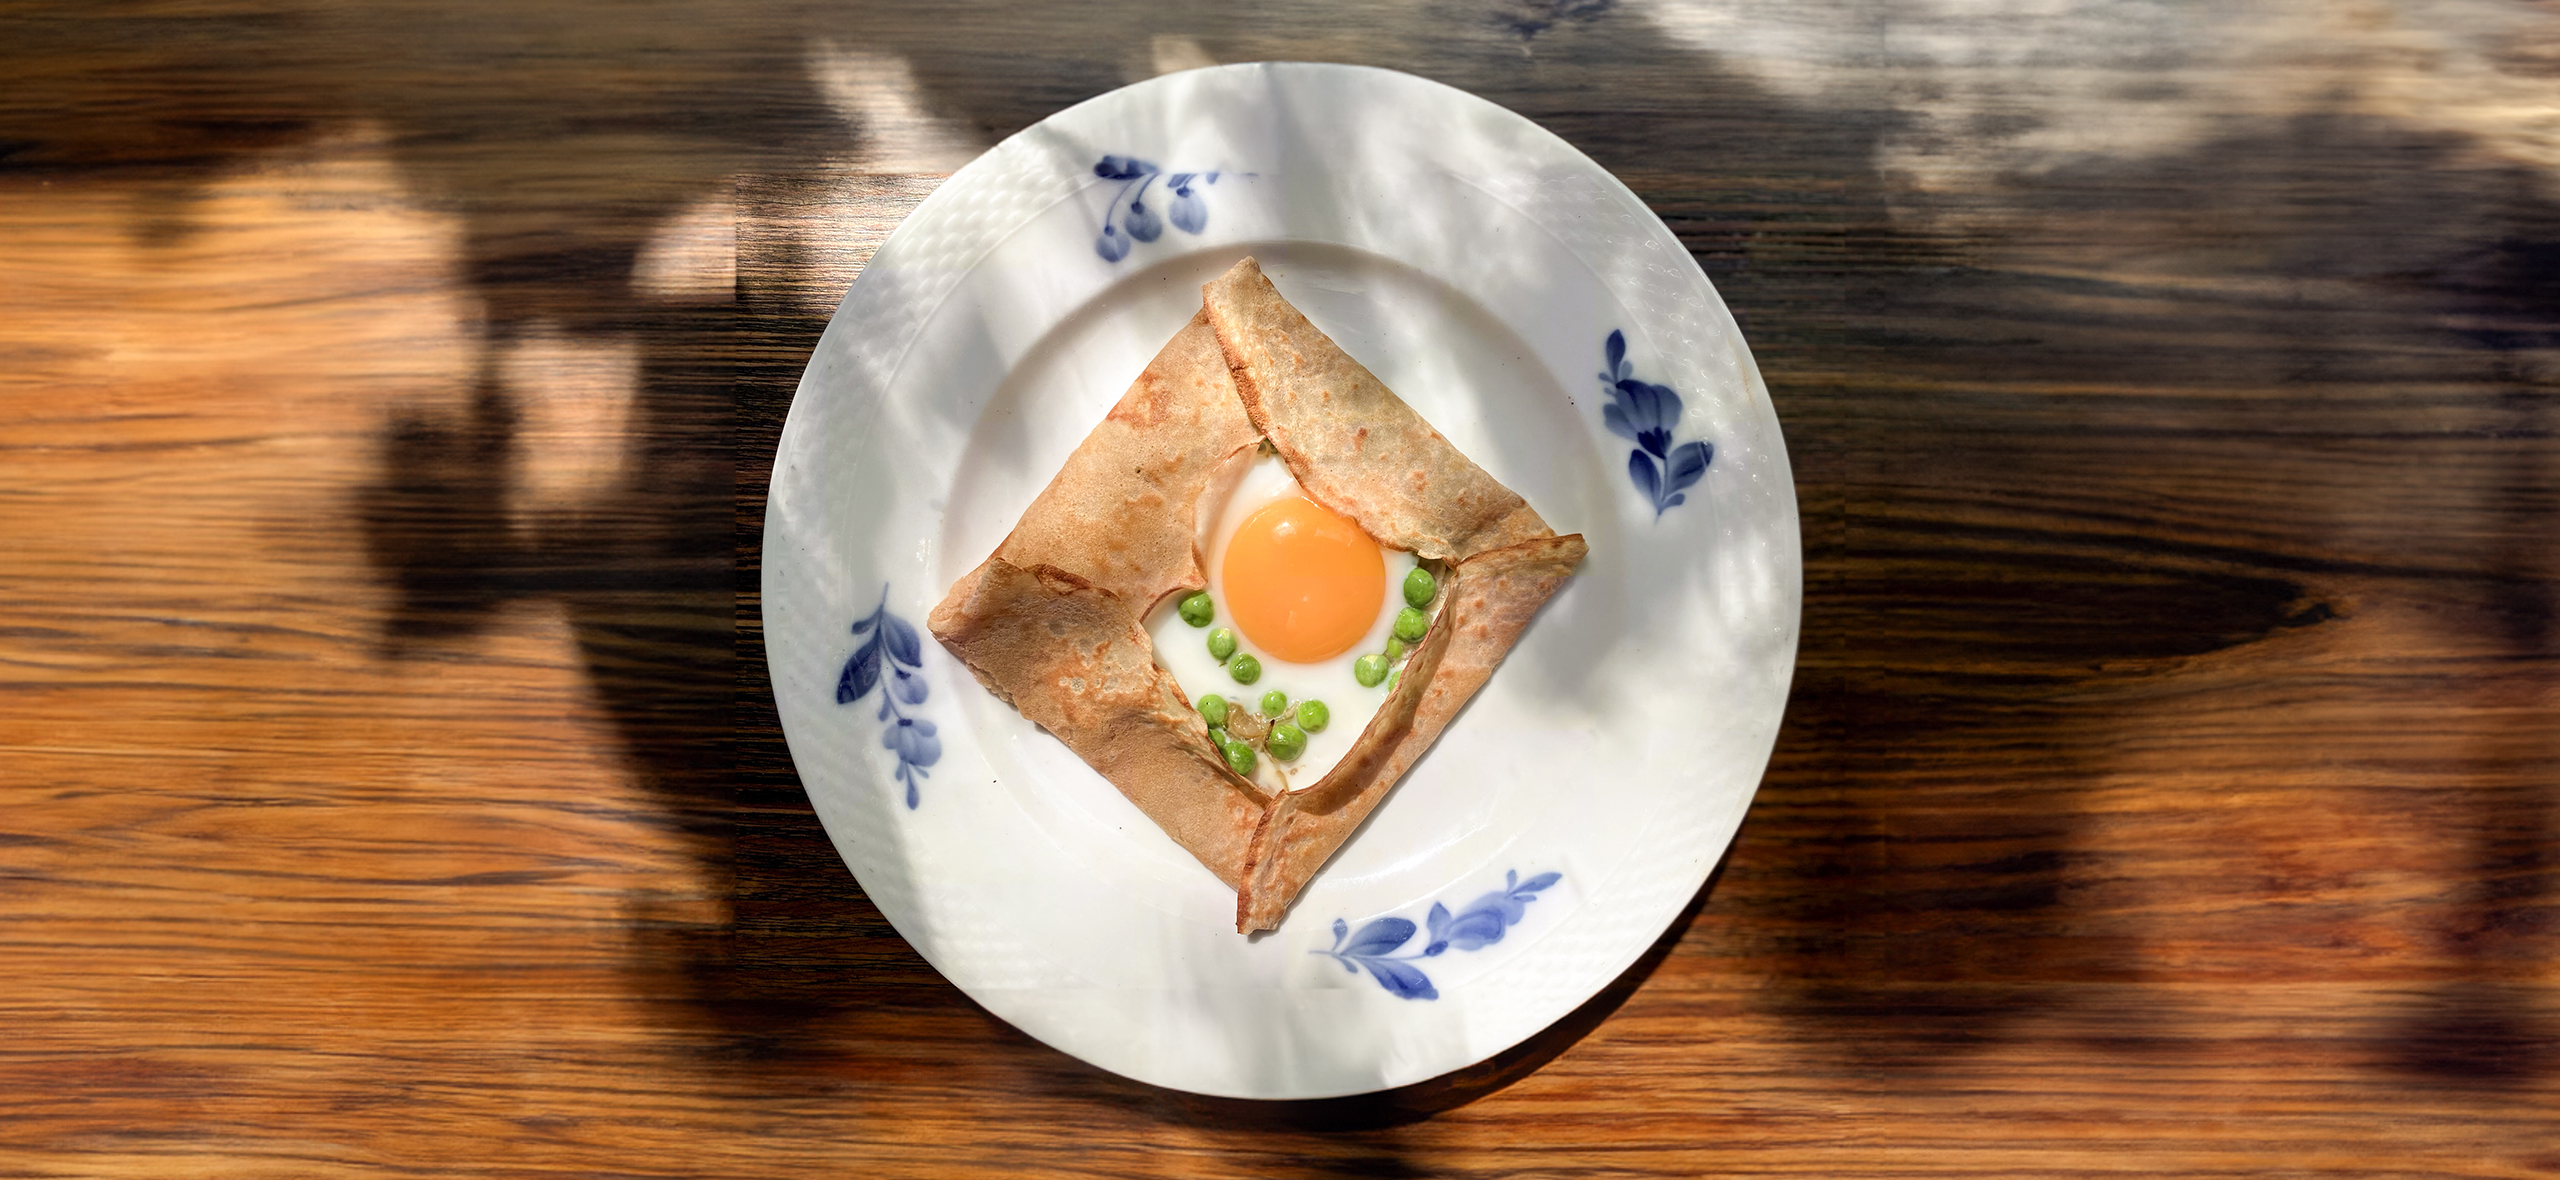 Рецепт яичницы в блине на завтрак